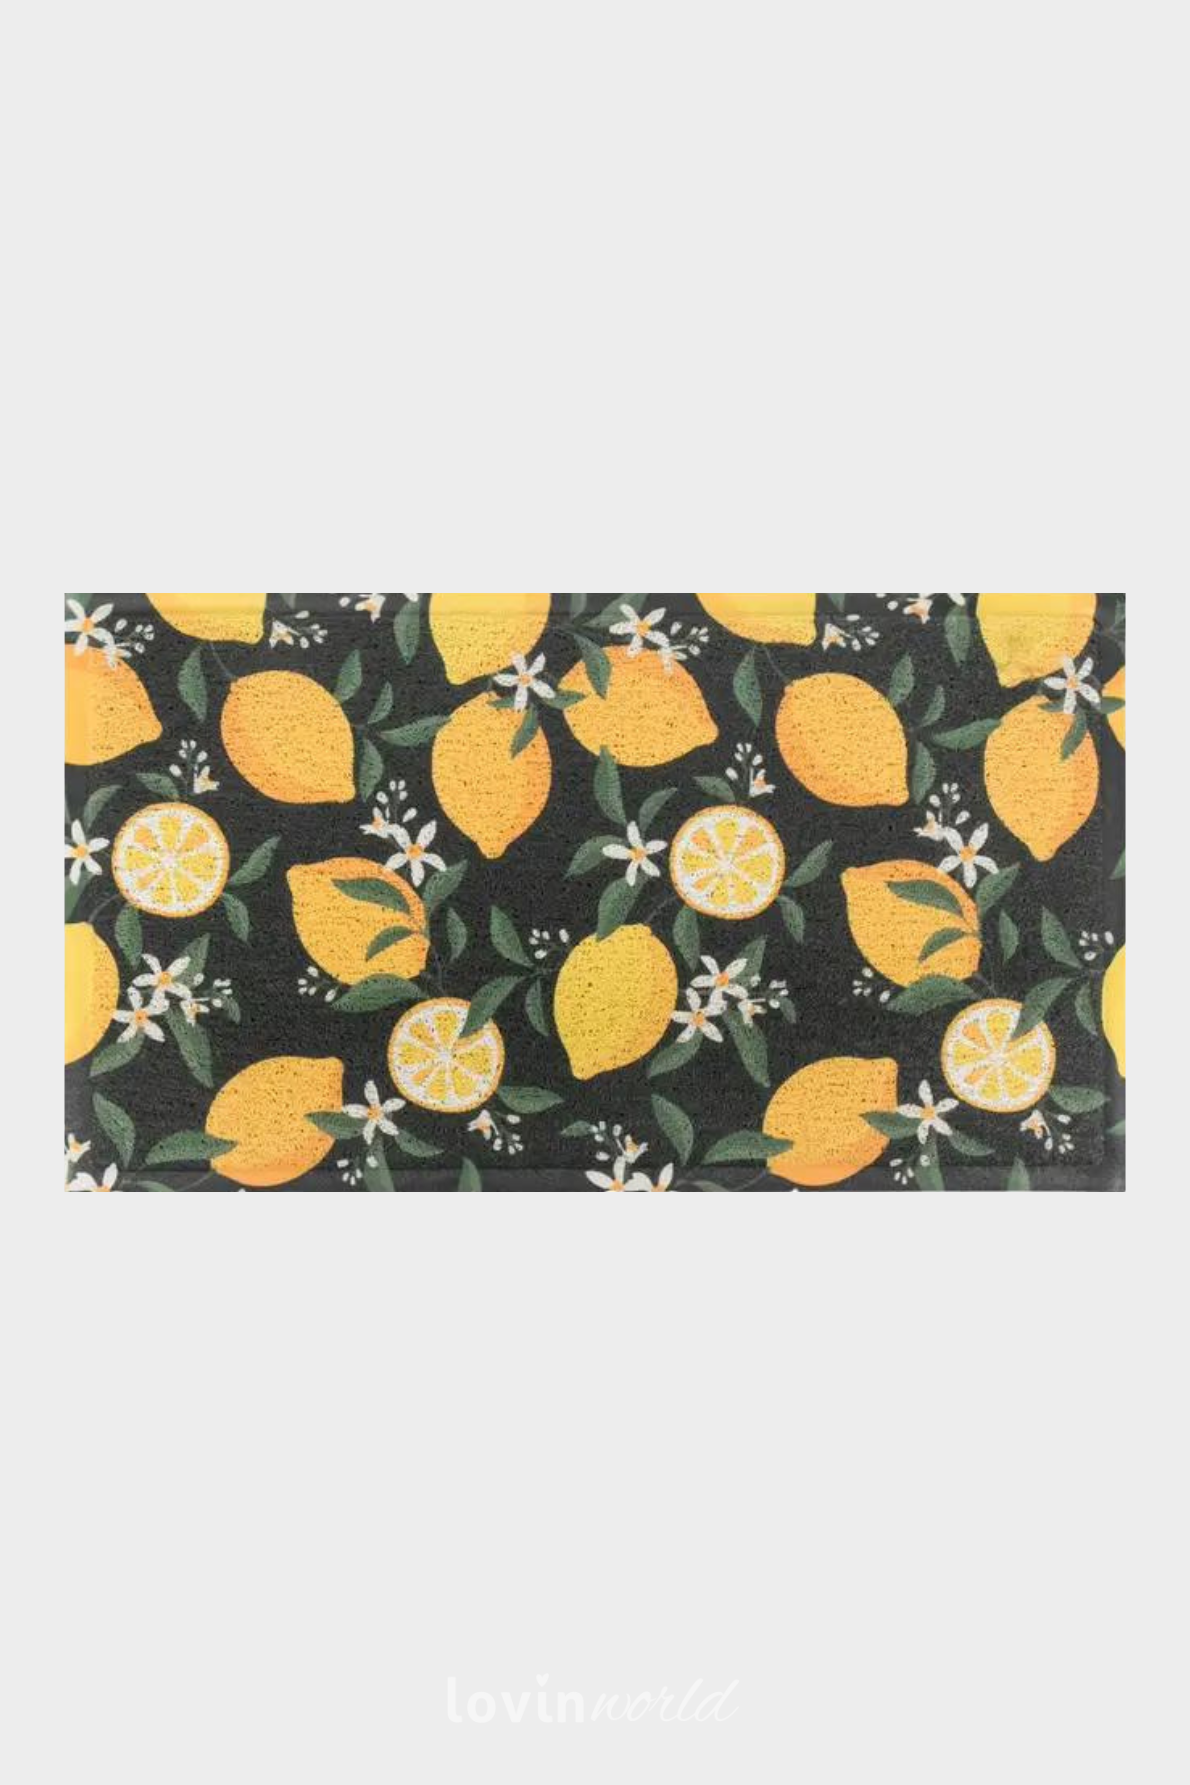 Zerbino particolare Lemons, in multicolore 40x70 cm.-1